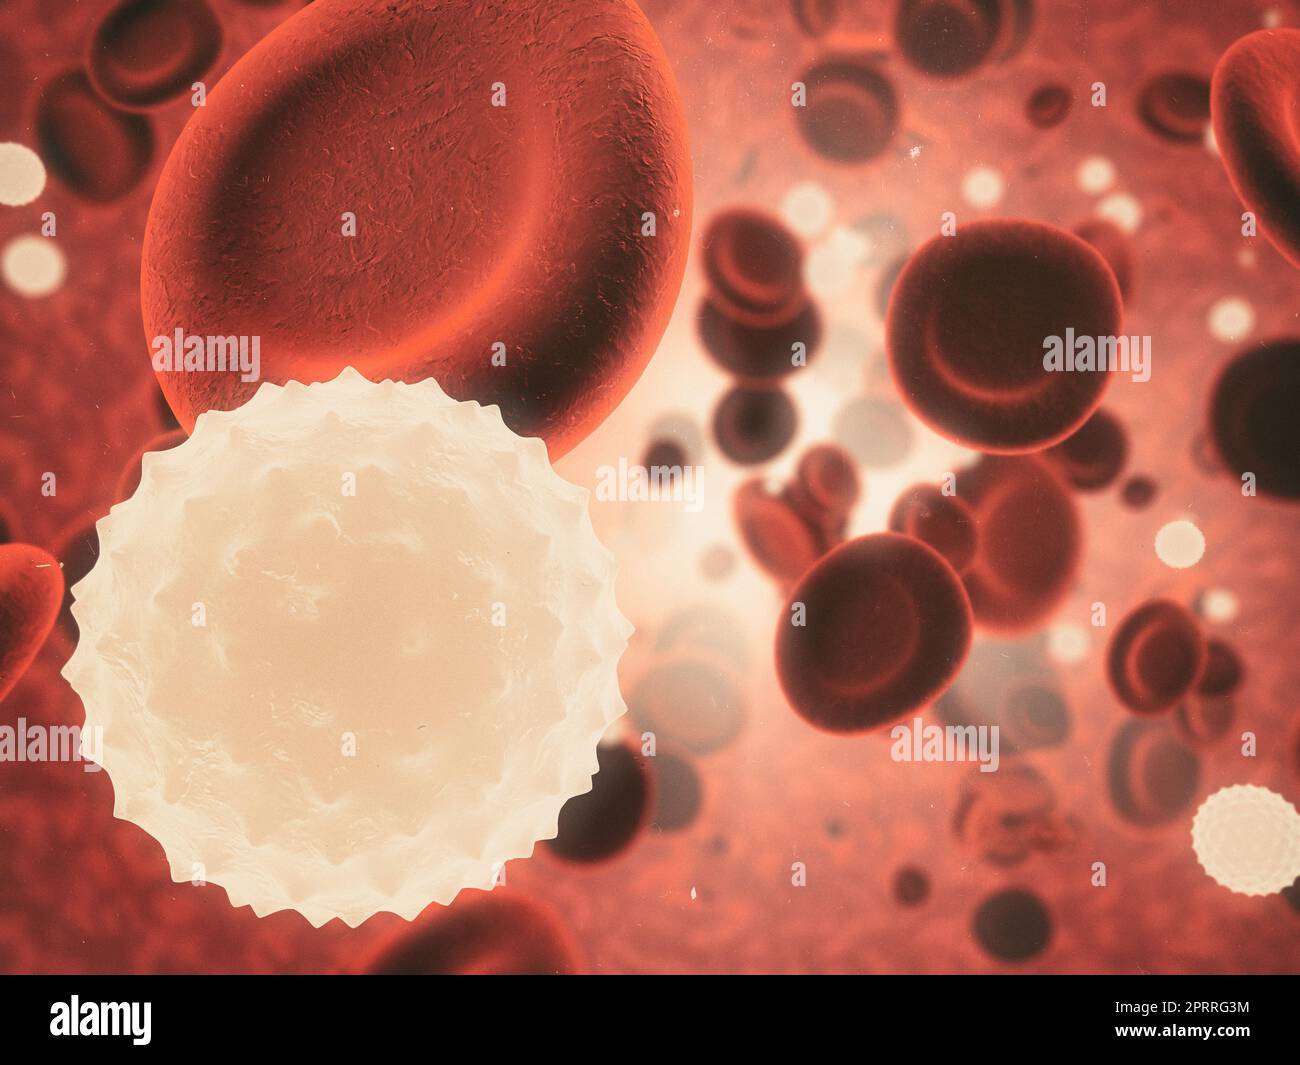 Im menschlichen Körper. Mikroskopische Ansicht eines Virus, der gesunde Zellen im menschlichen Körper angreift. Stockfoto